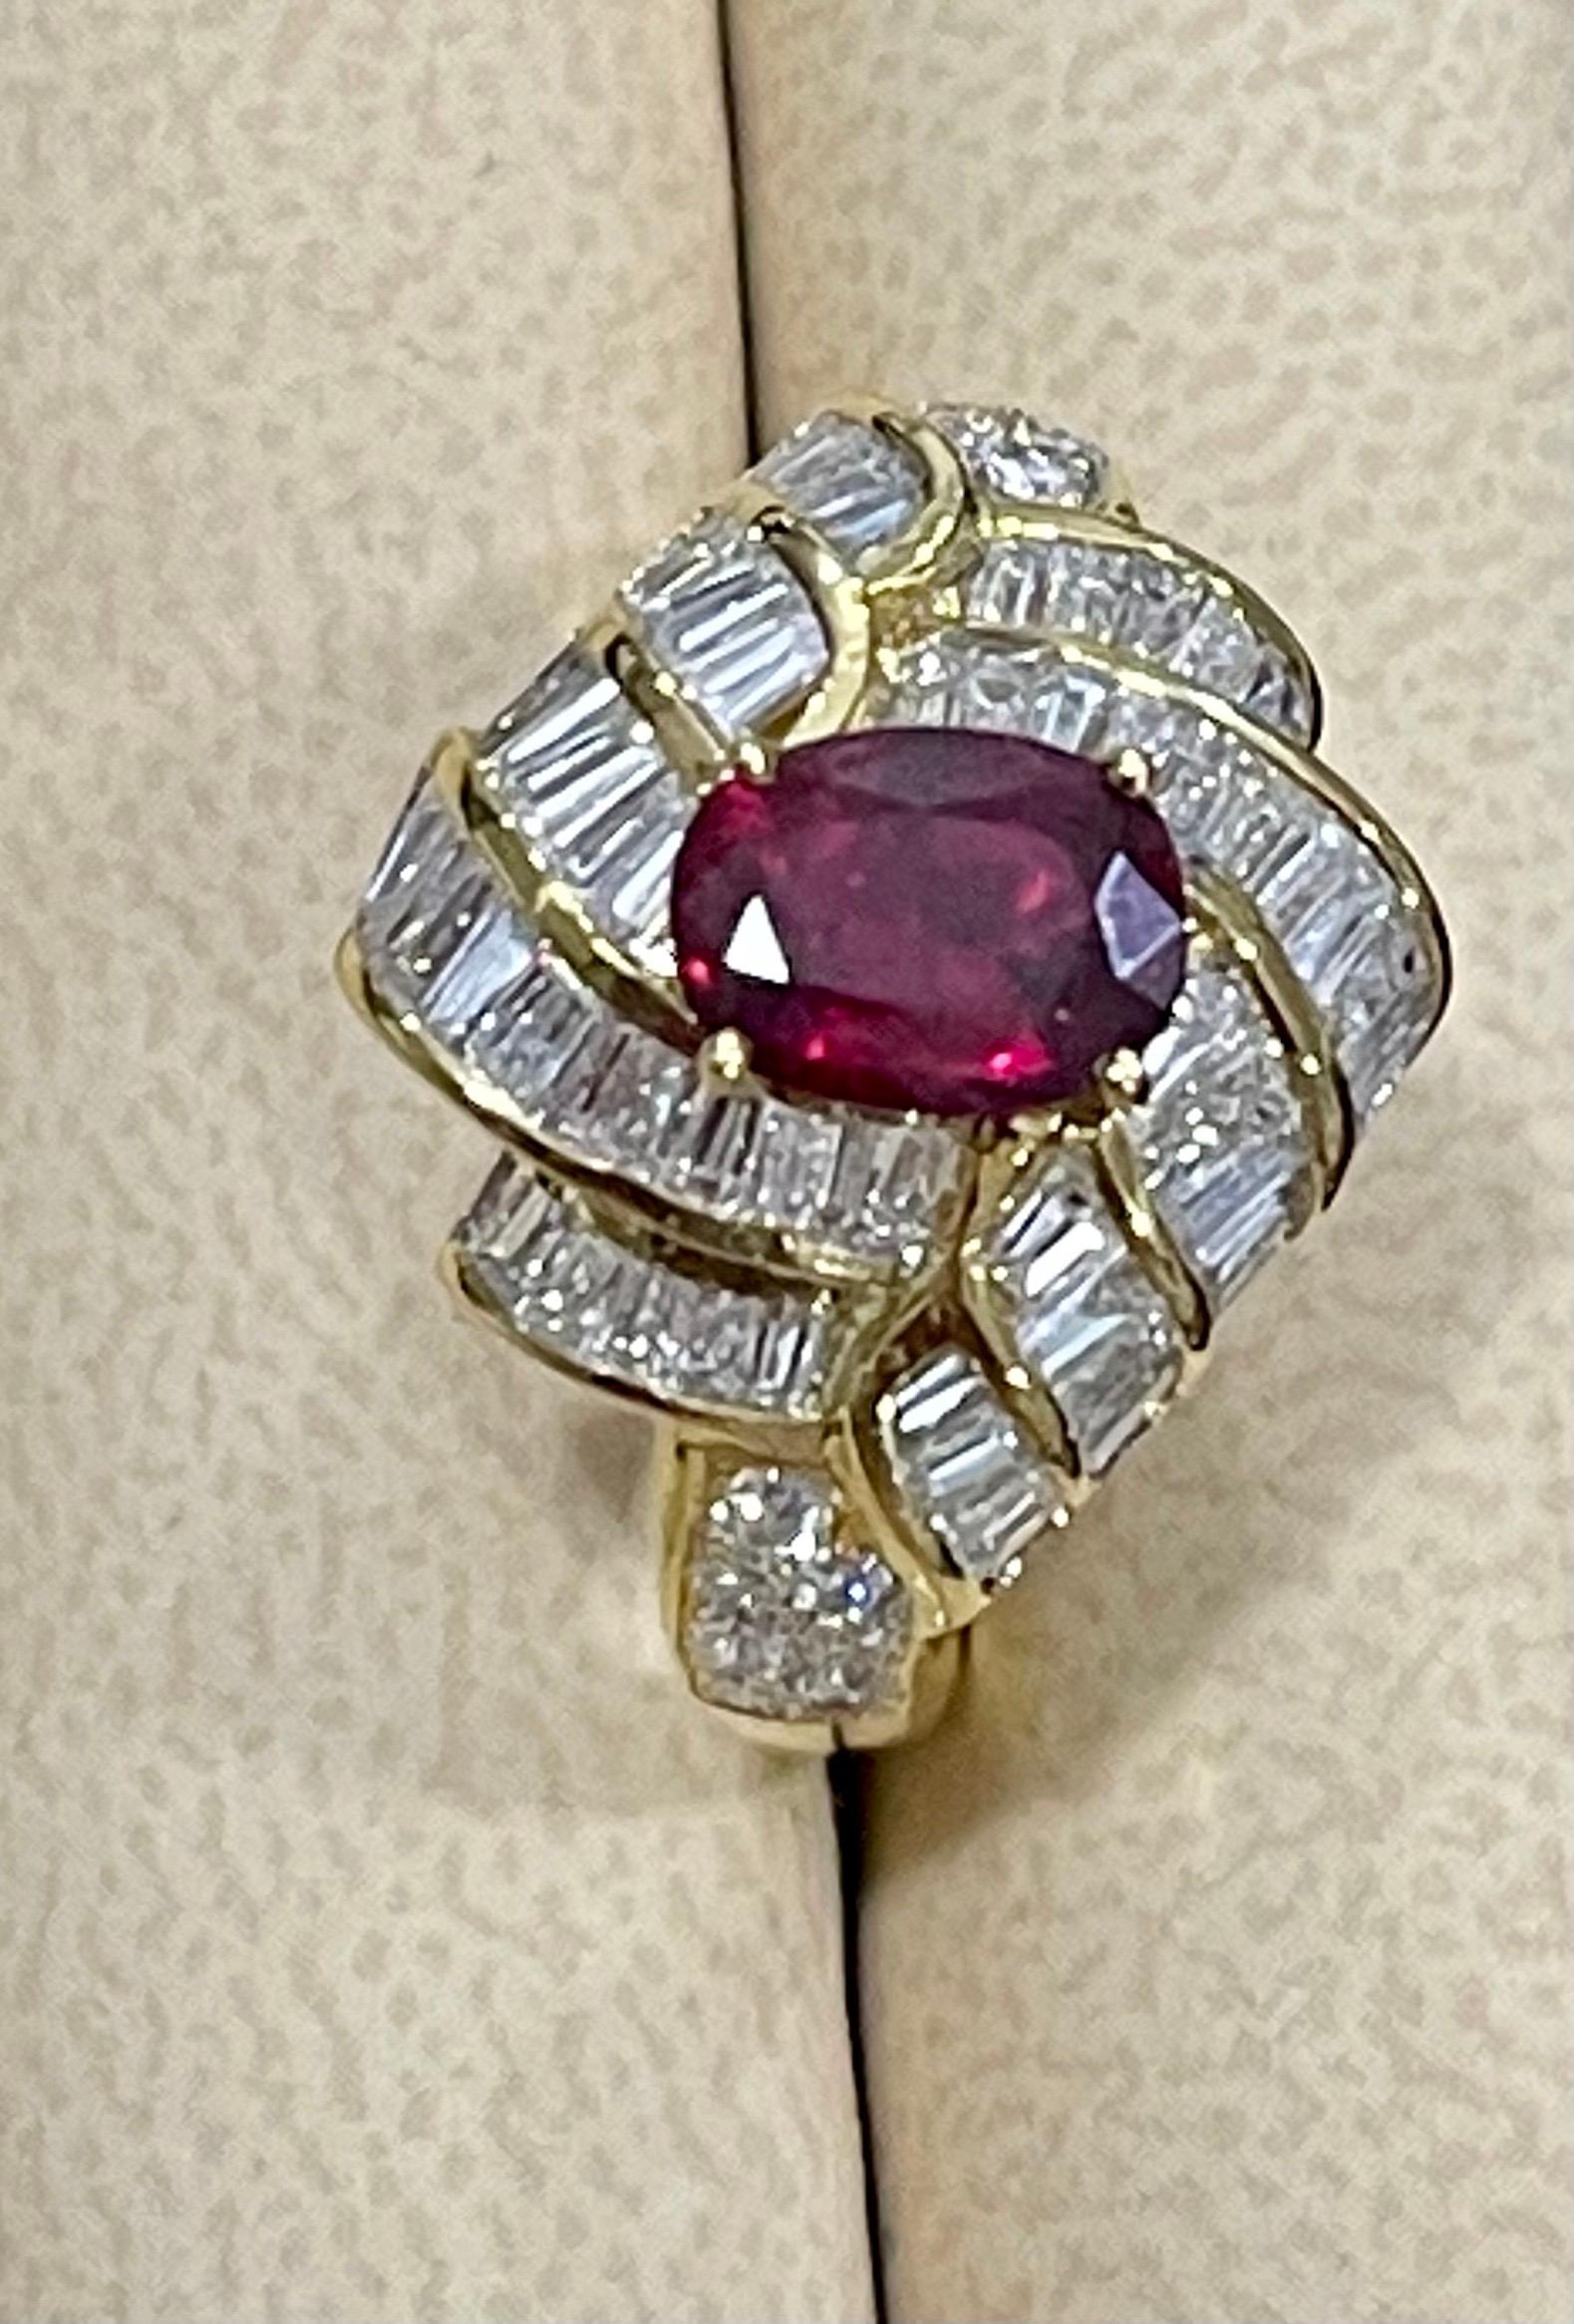 1.3 carat oval diamond ring